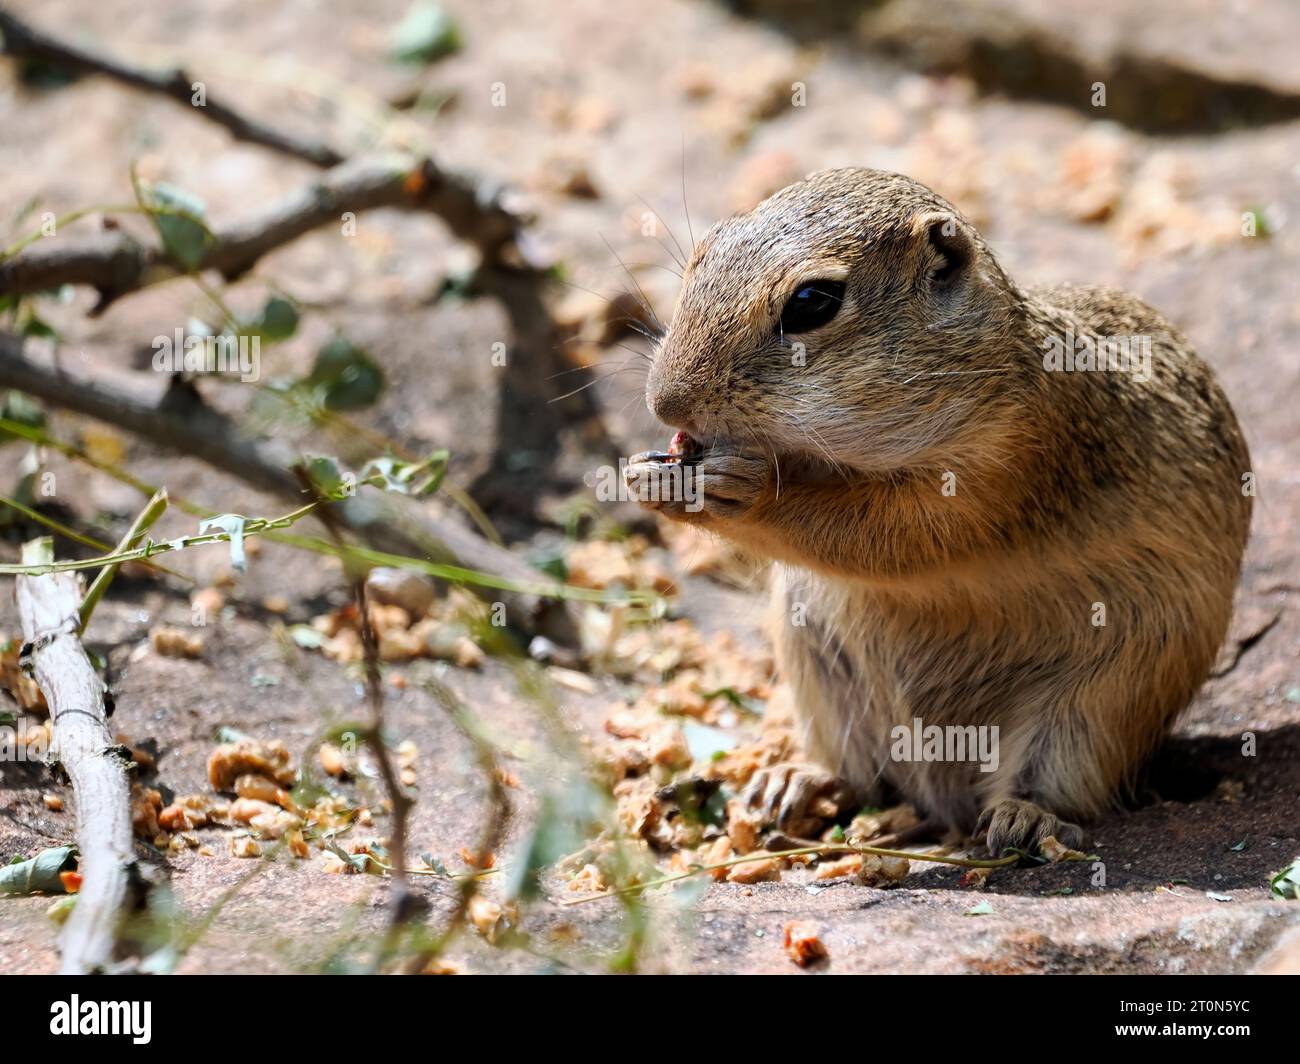 Écureuil de sol européen ou souslik européen (Spermophilus citellus) mangeant des granules assis sur le sol Banque D'Images